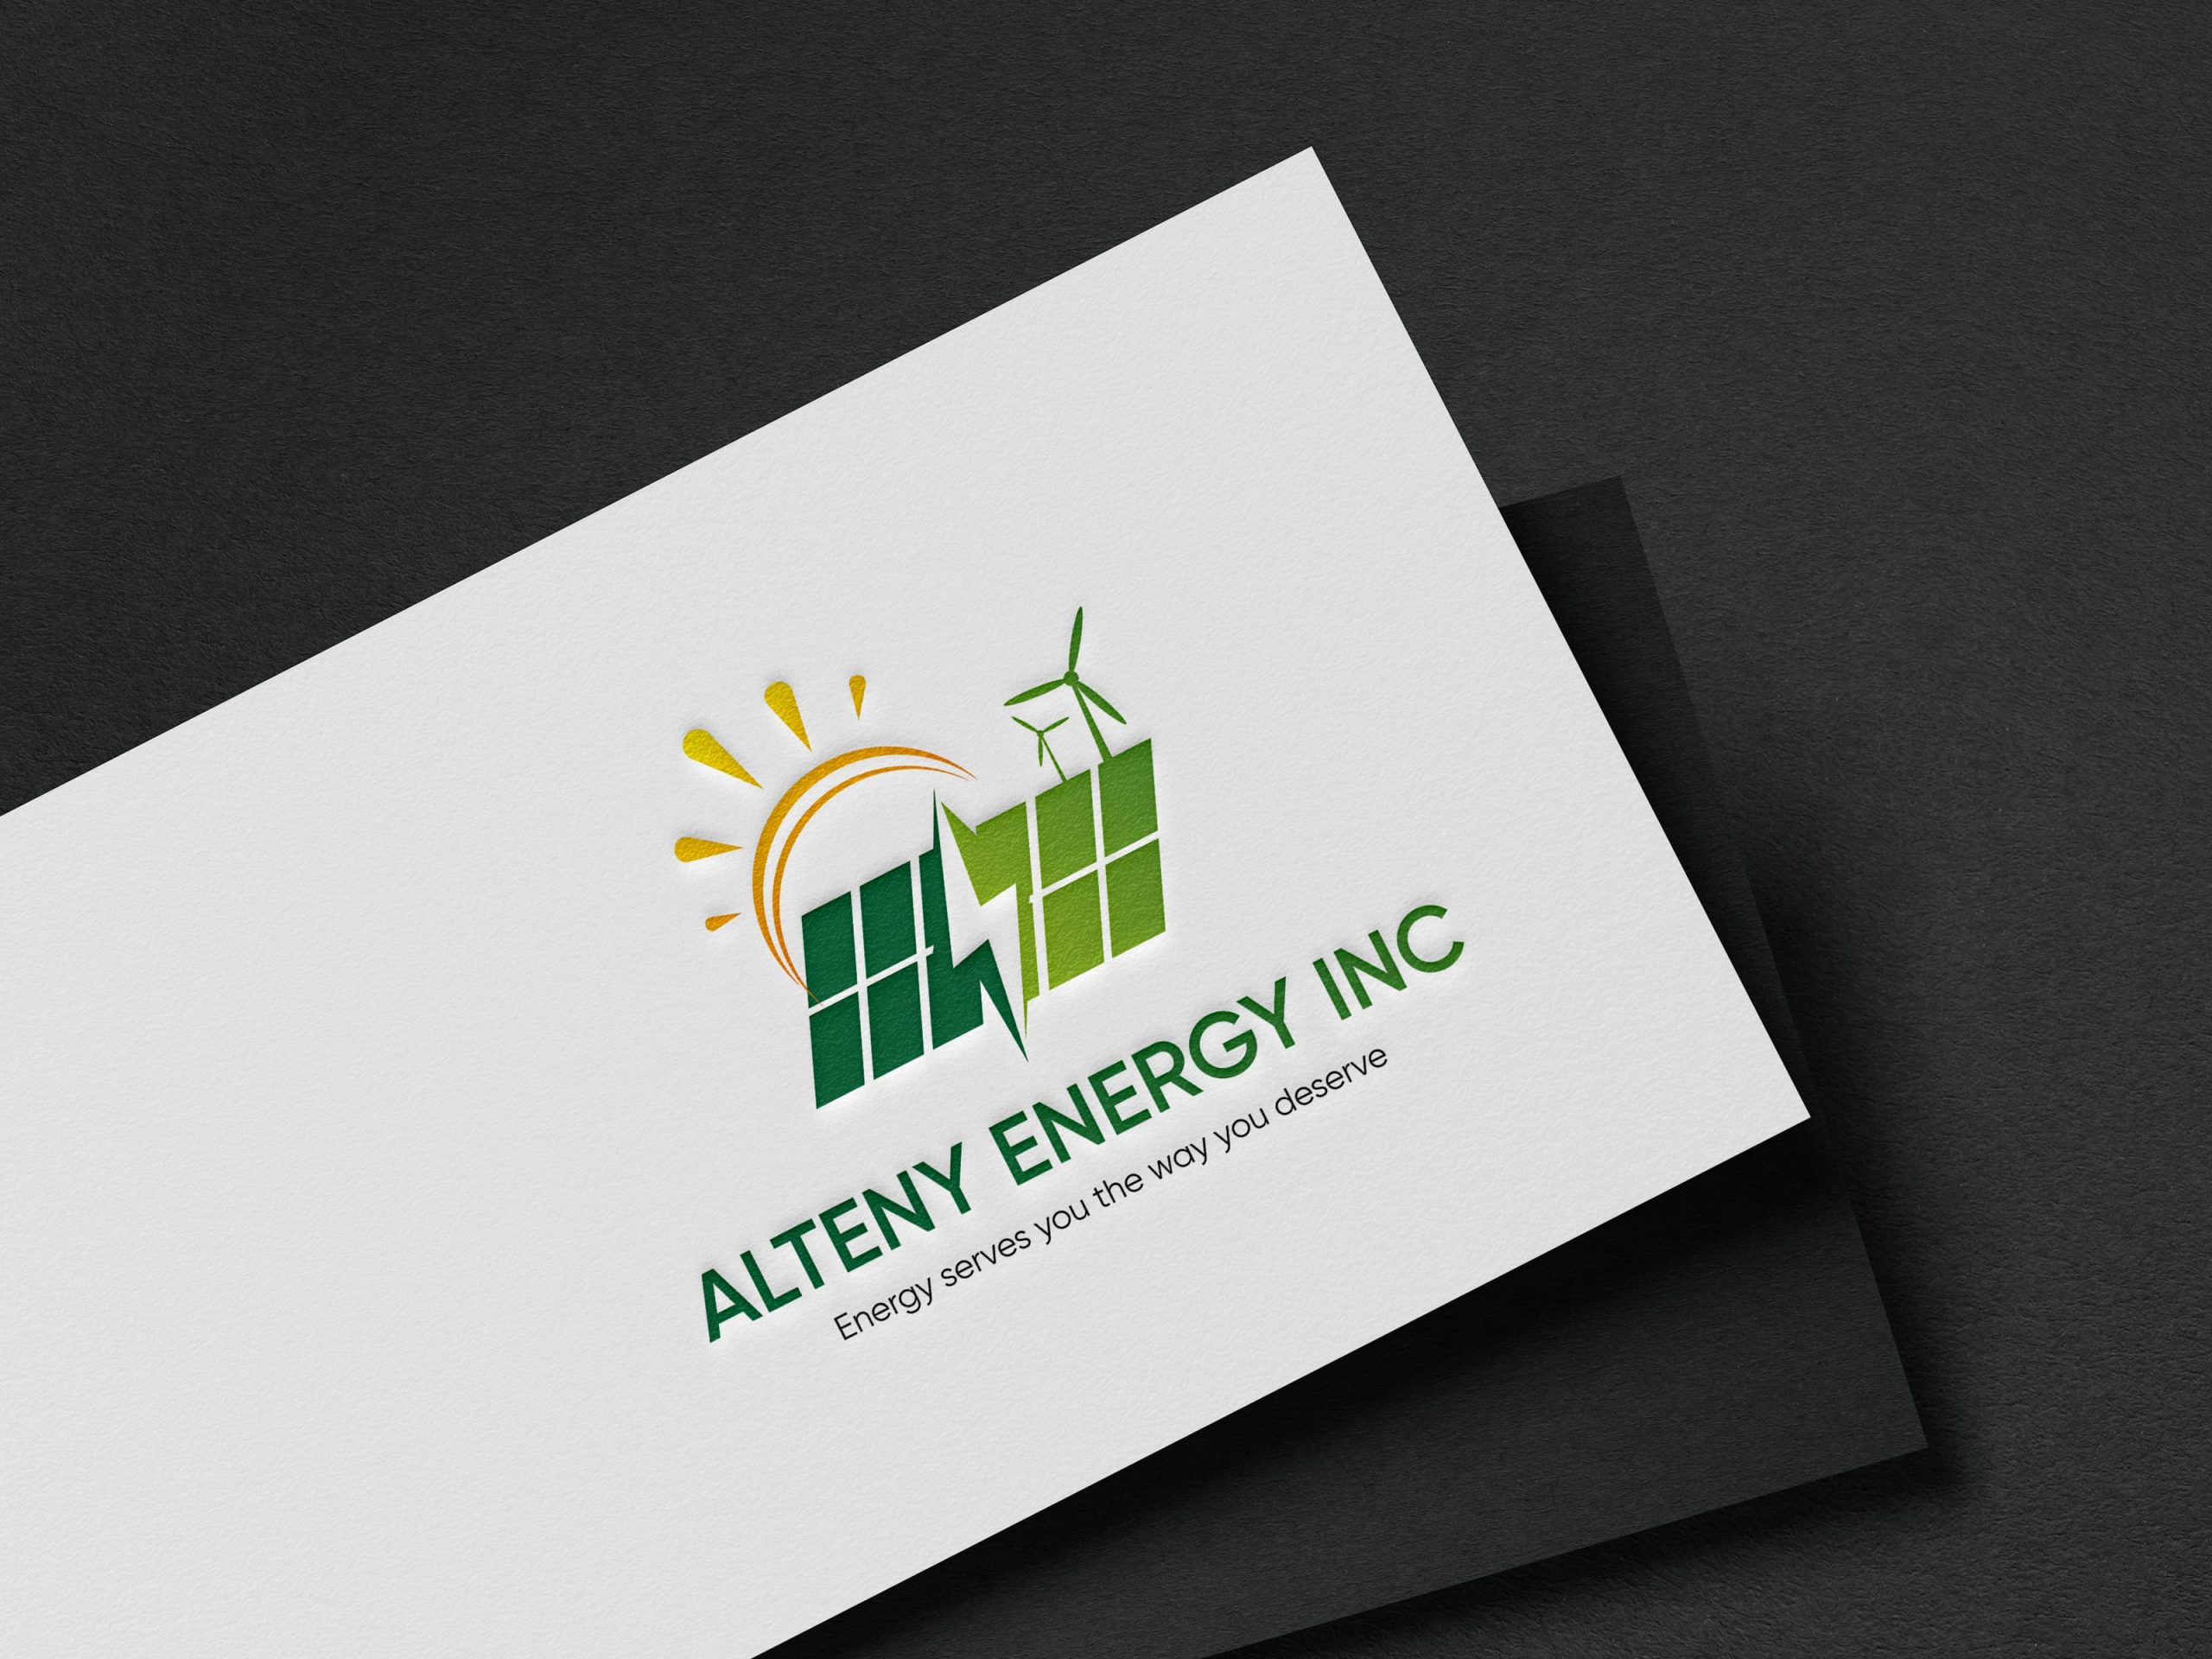 Alteny Energy